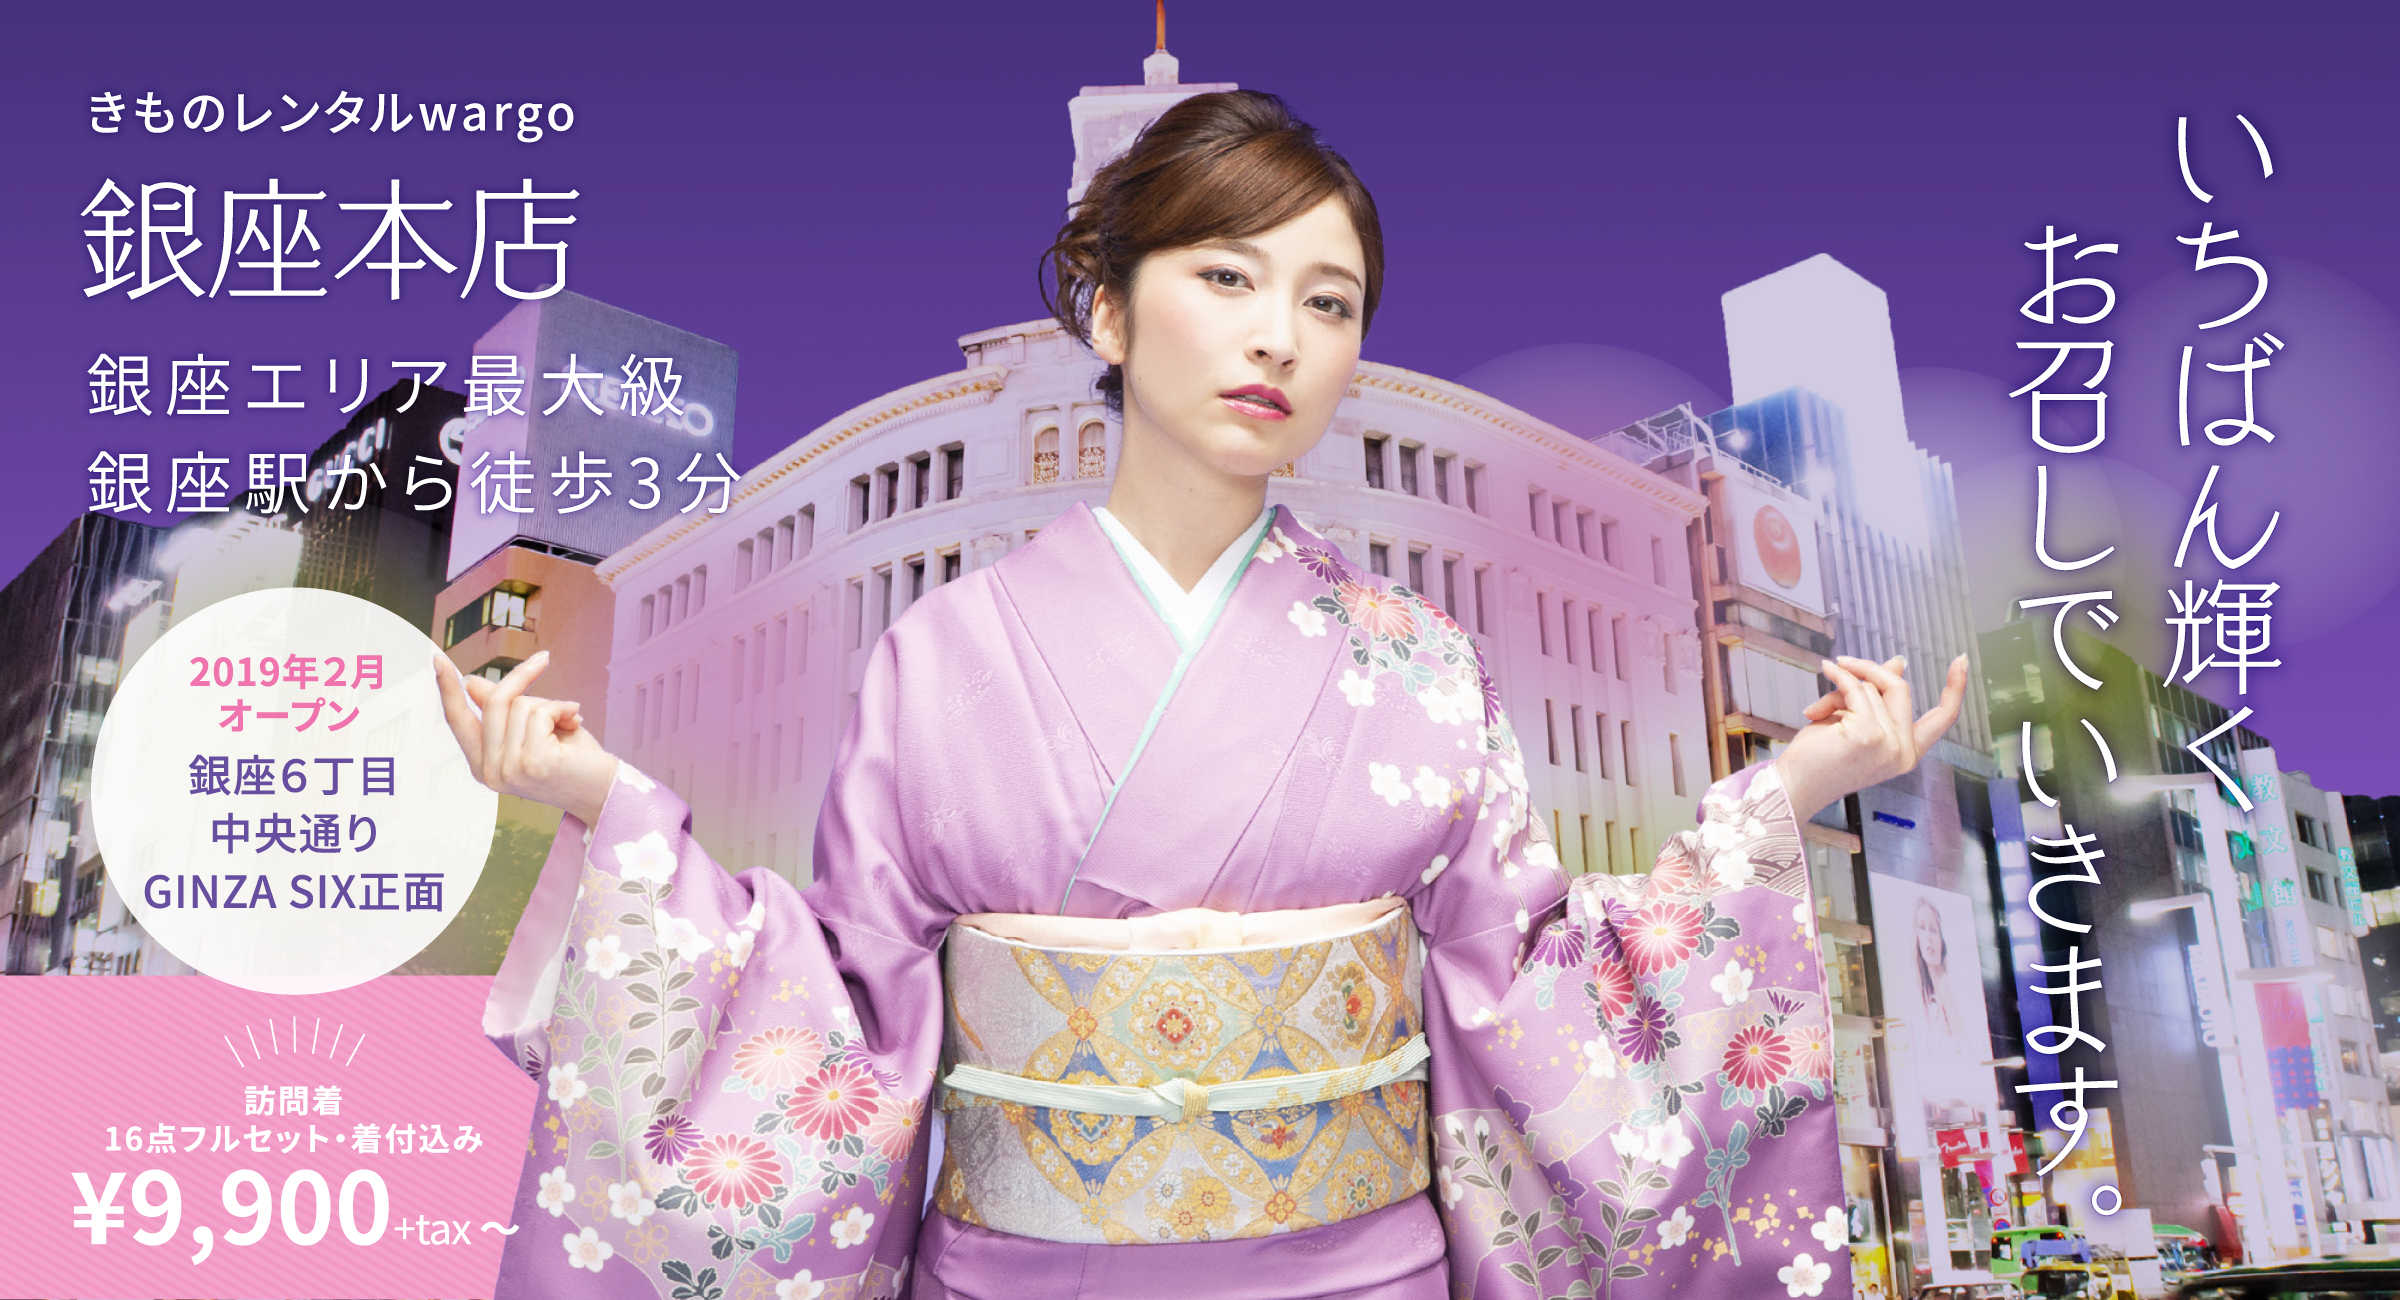 Kimono Rental Wargo, for the best kimono and yukata rental choice in Ginza